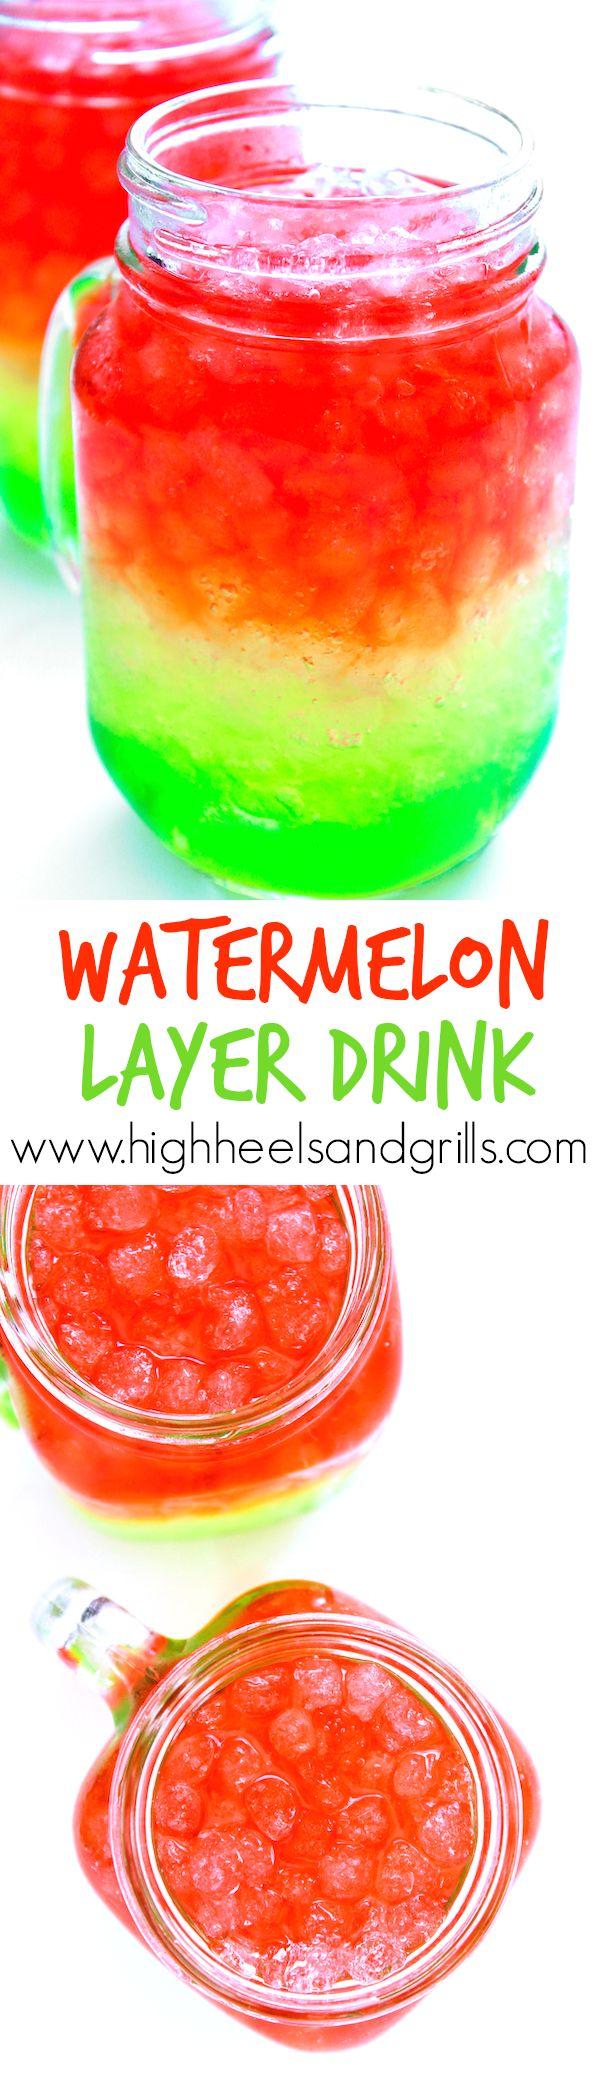 Wedding - Watermelon Layer Drink